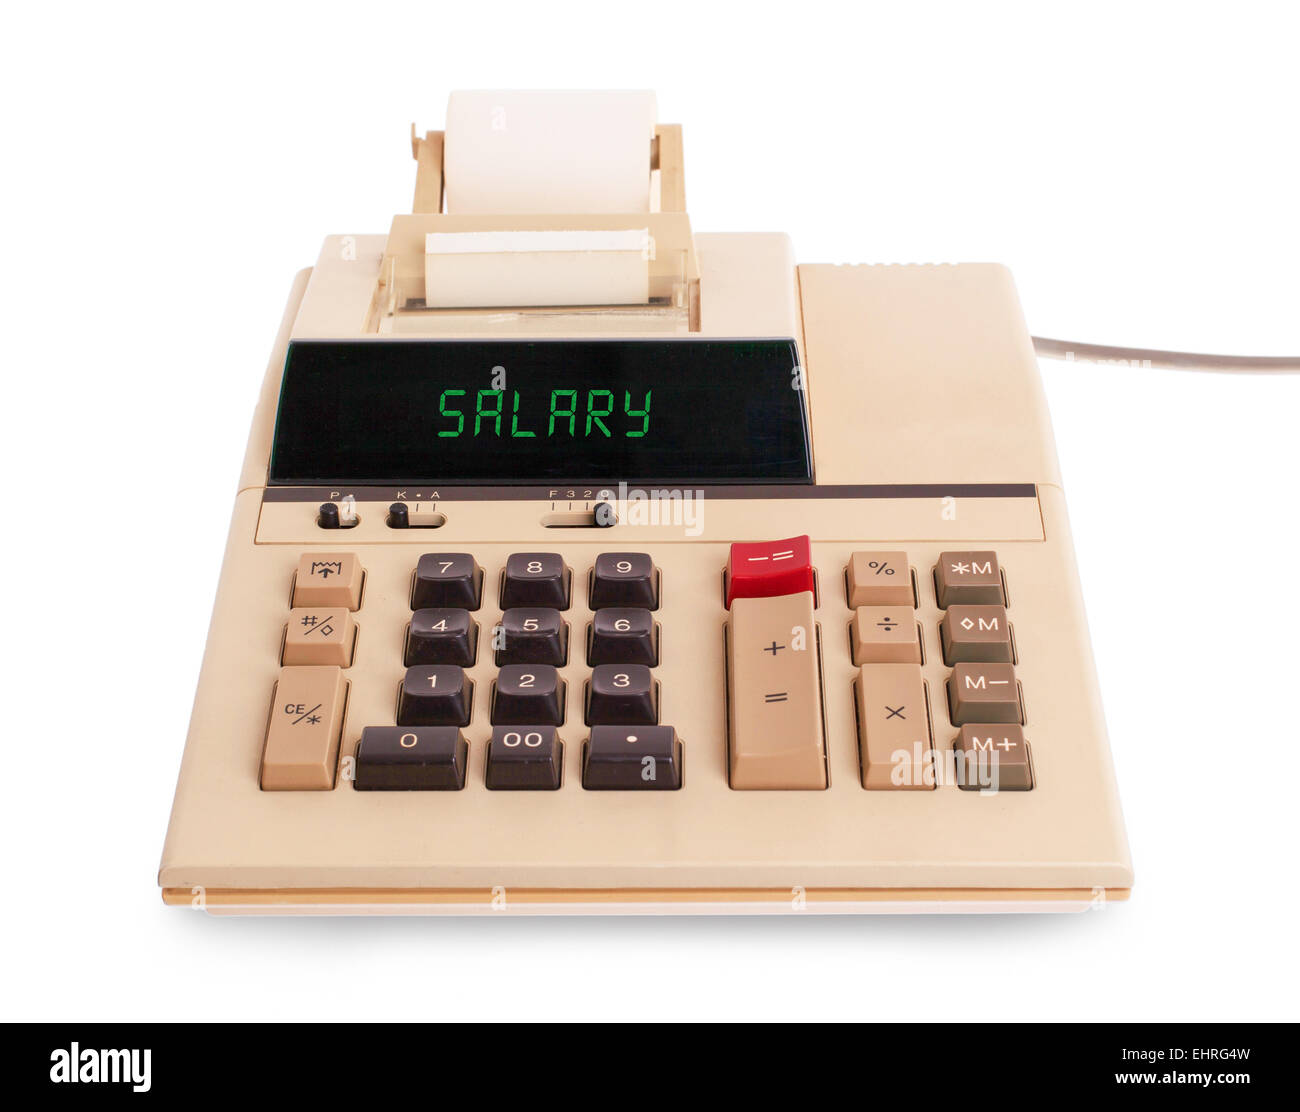 Calcolatore vecchio che mostra un testo sul display - salario Foto Stock